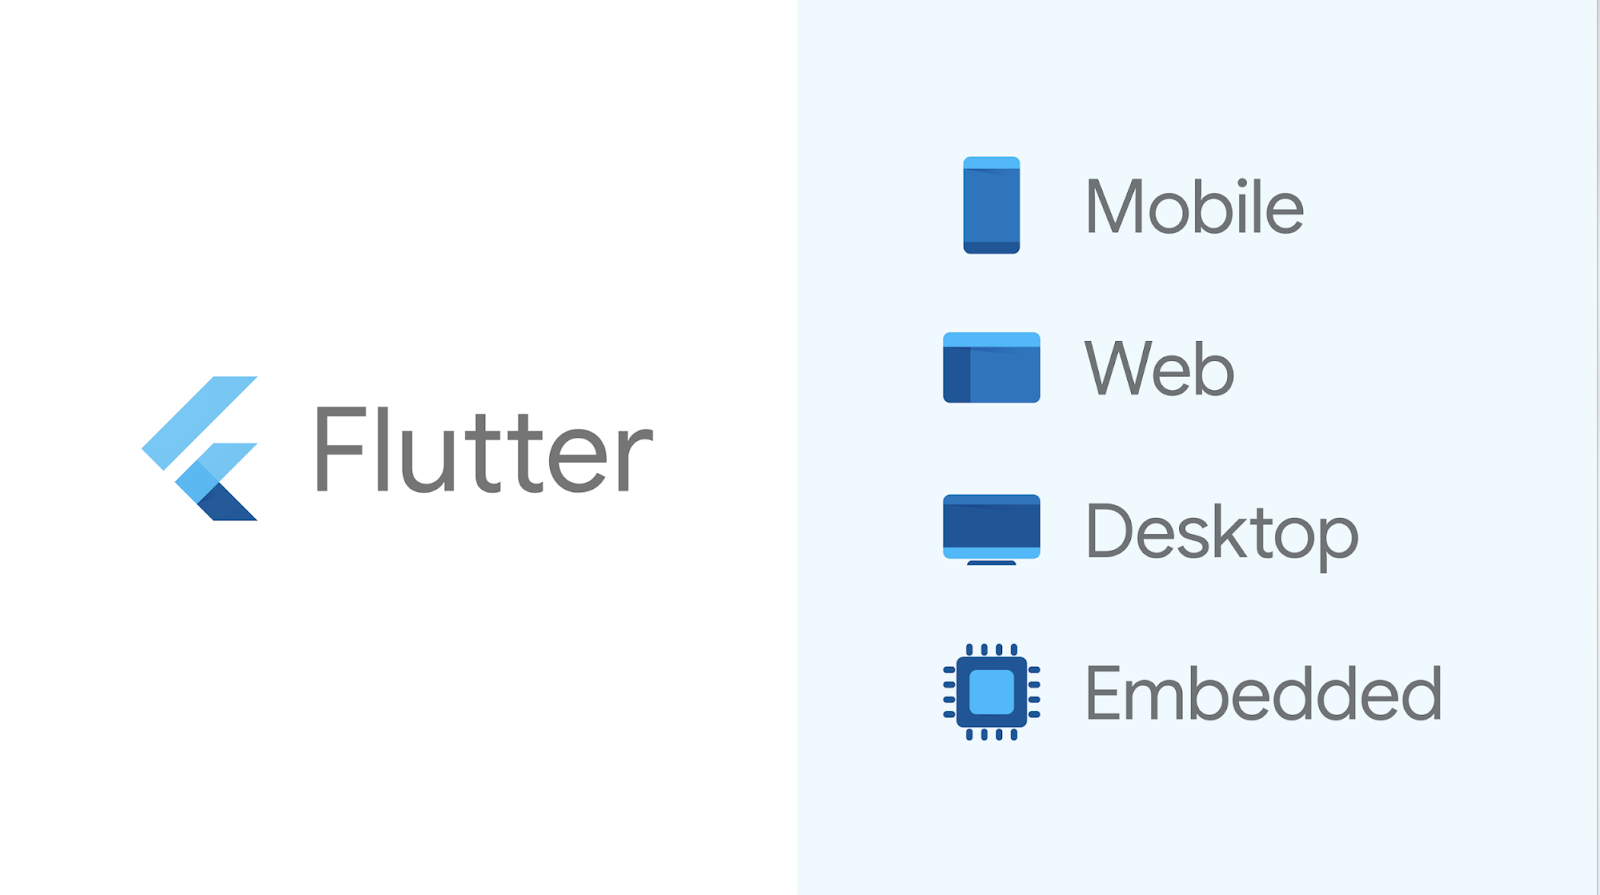 Flutter Mobile, Web, Desktop, and Embedded